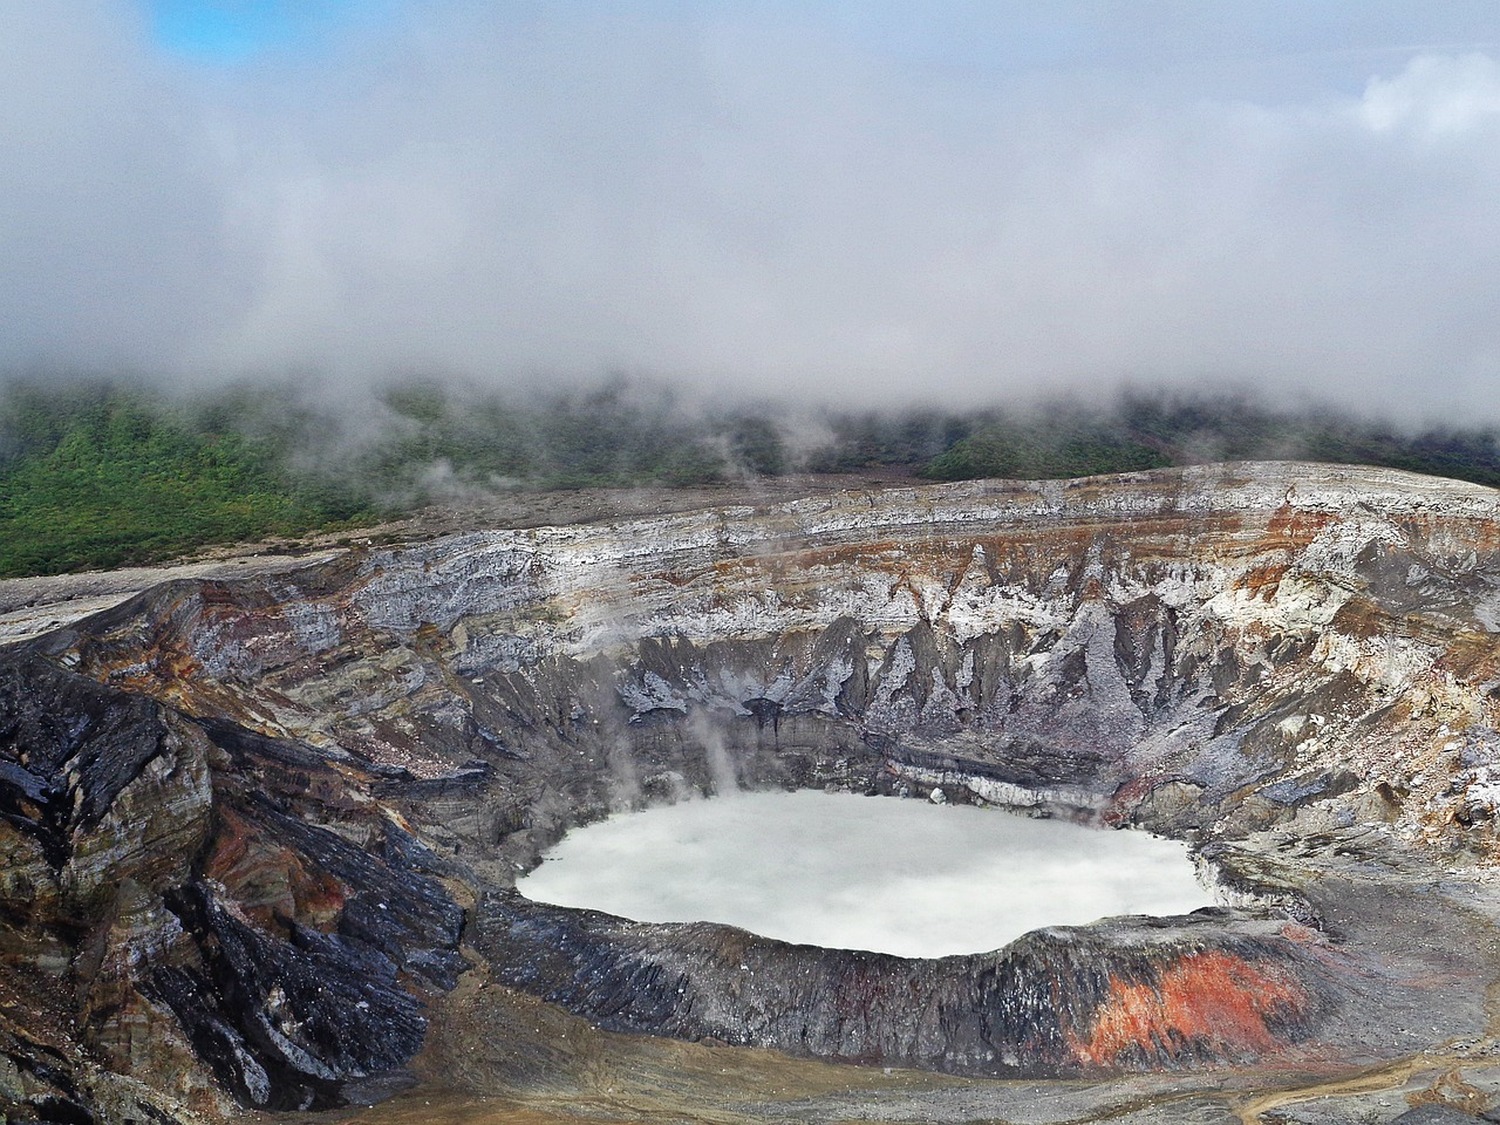 世界最大のクレーターを持つポアス火山国立公園は雨男？